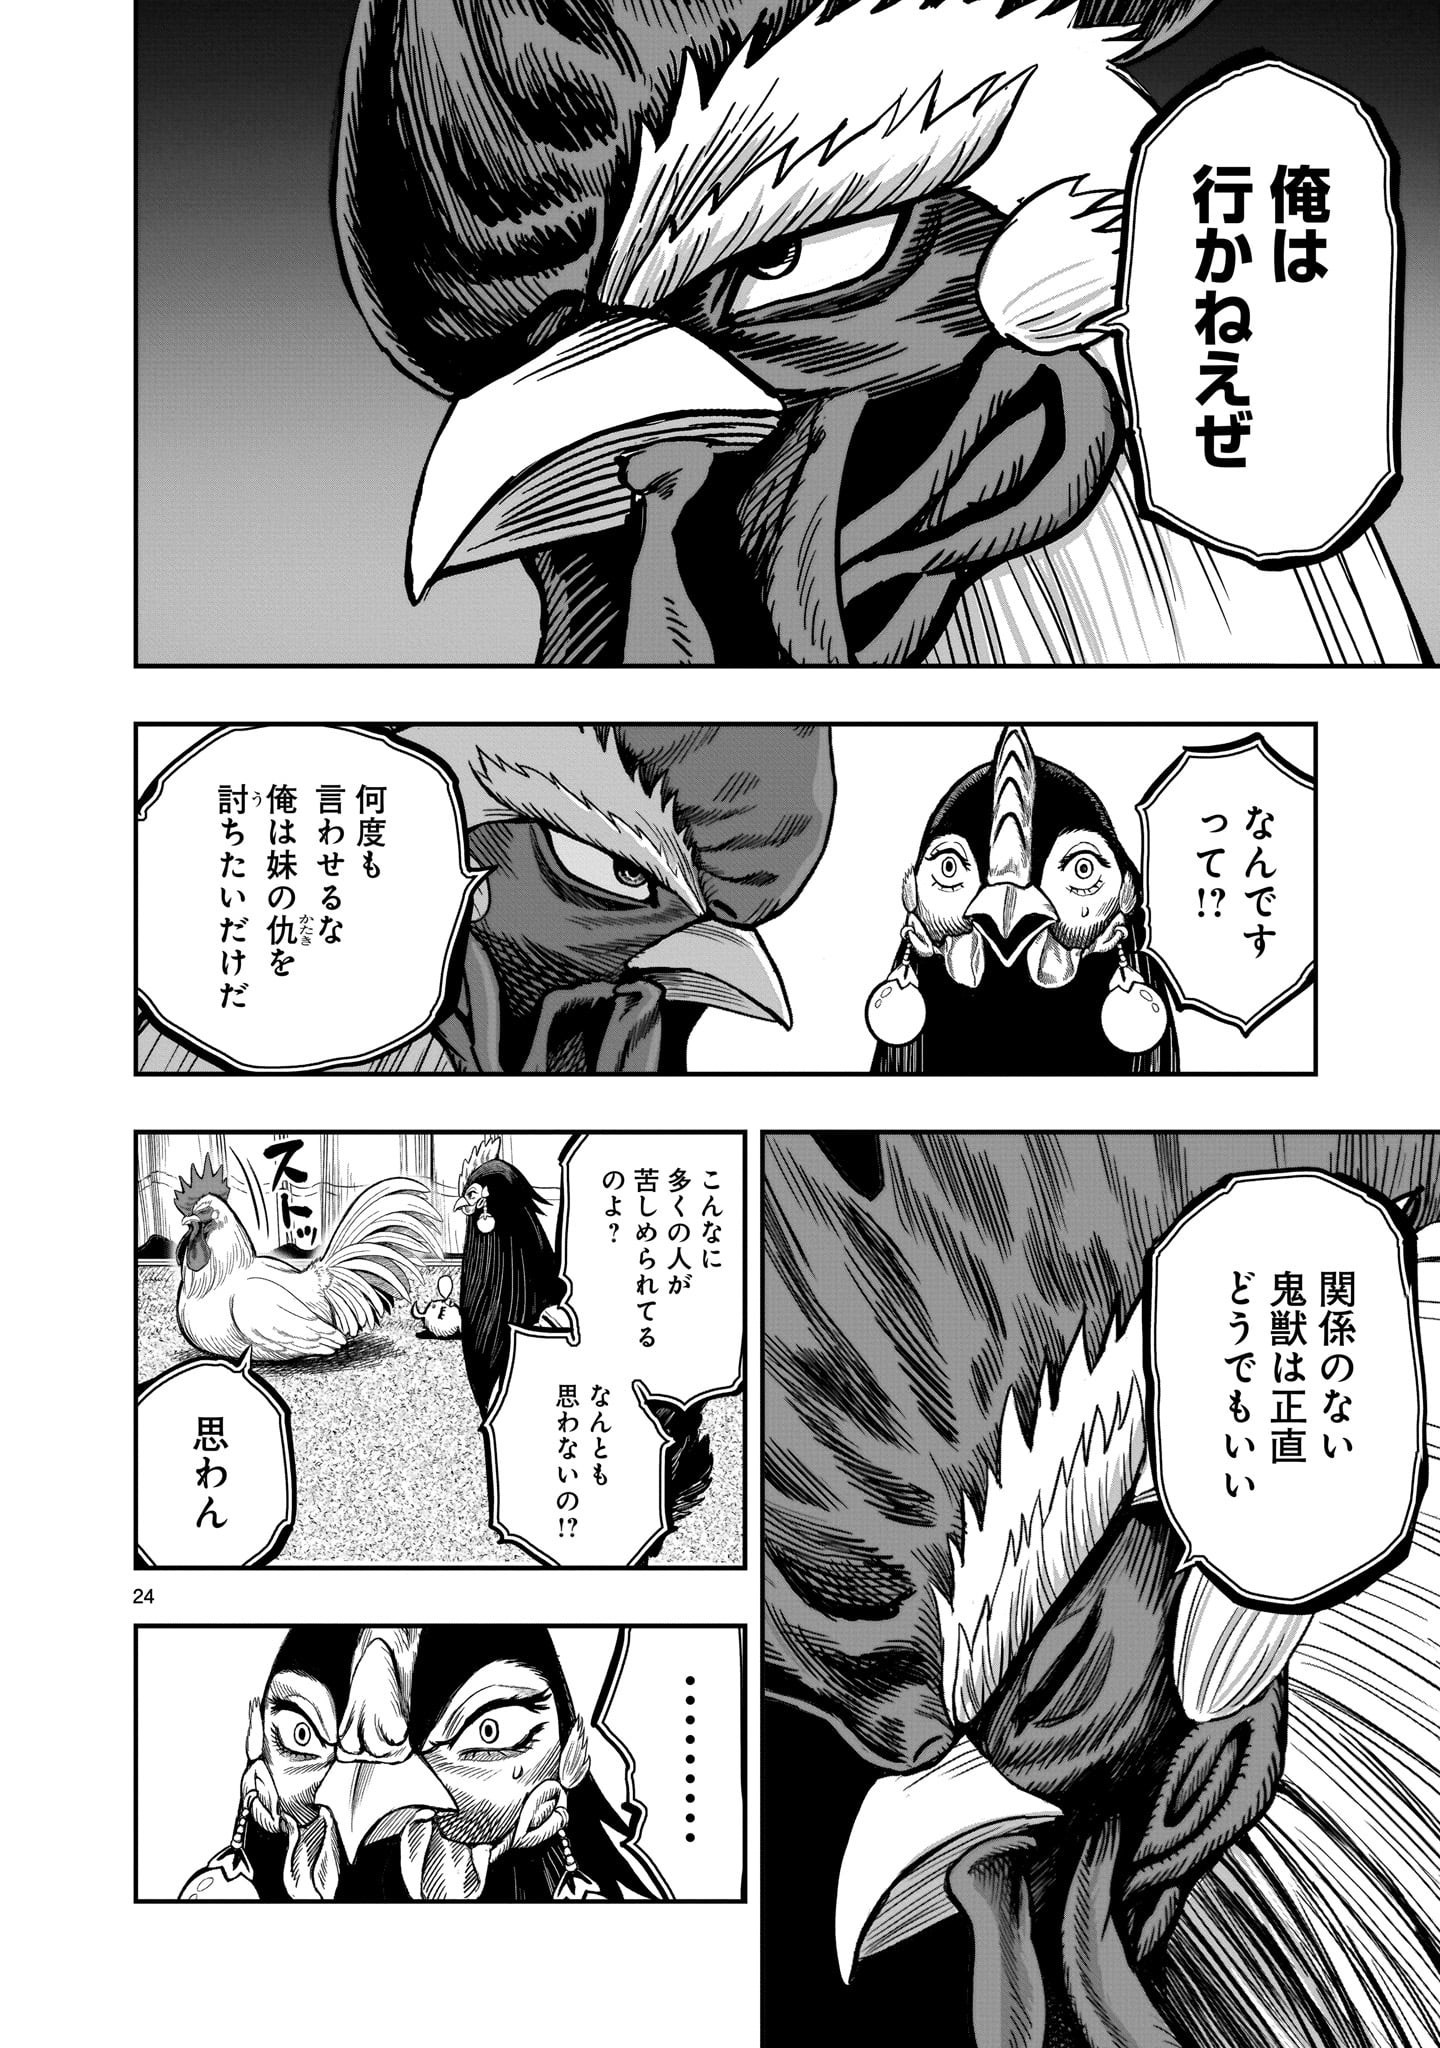 Saint Seiya: Meiou Iden – Dark Wing 第9話 - Page 24